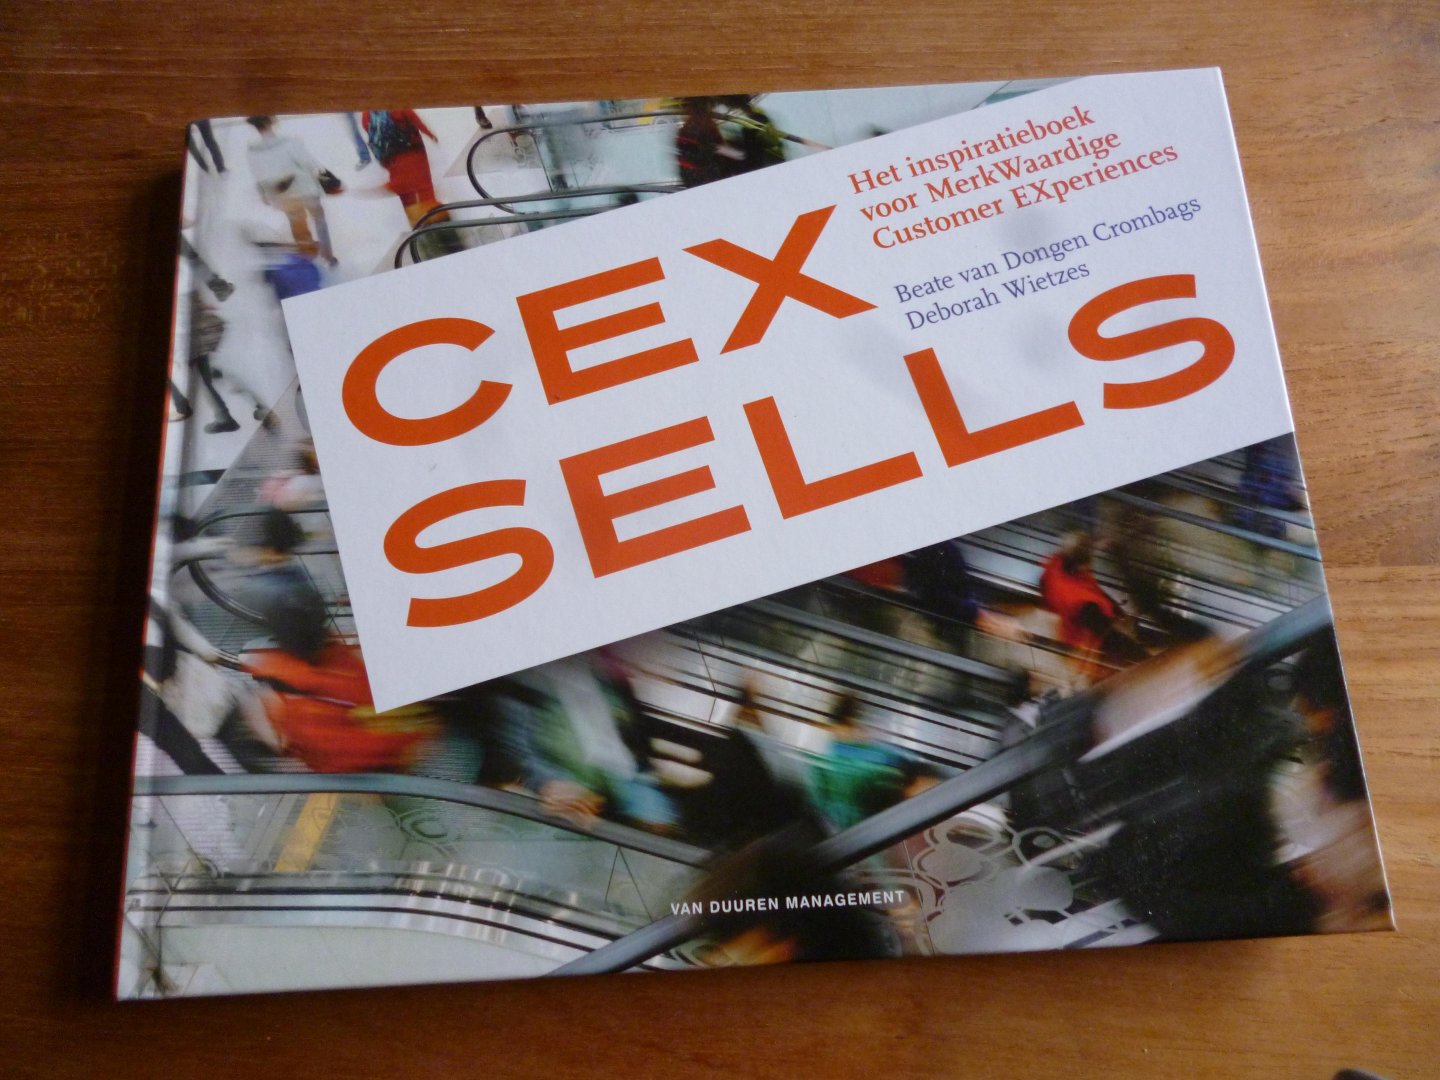 Dongen Crombags, Beate van, Wietzes, Deborah - CEX Sells / het inspiratieboek voor merkwaardige customer experiences